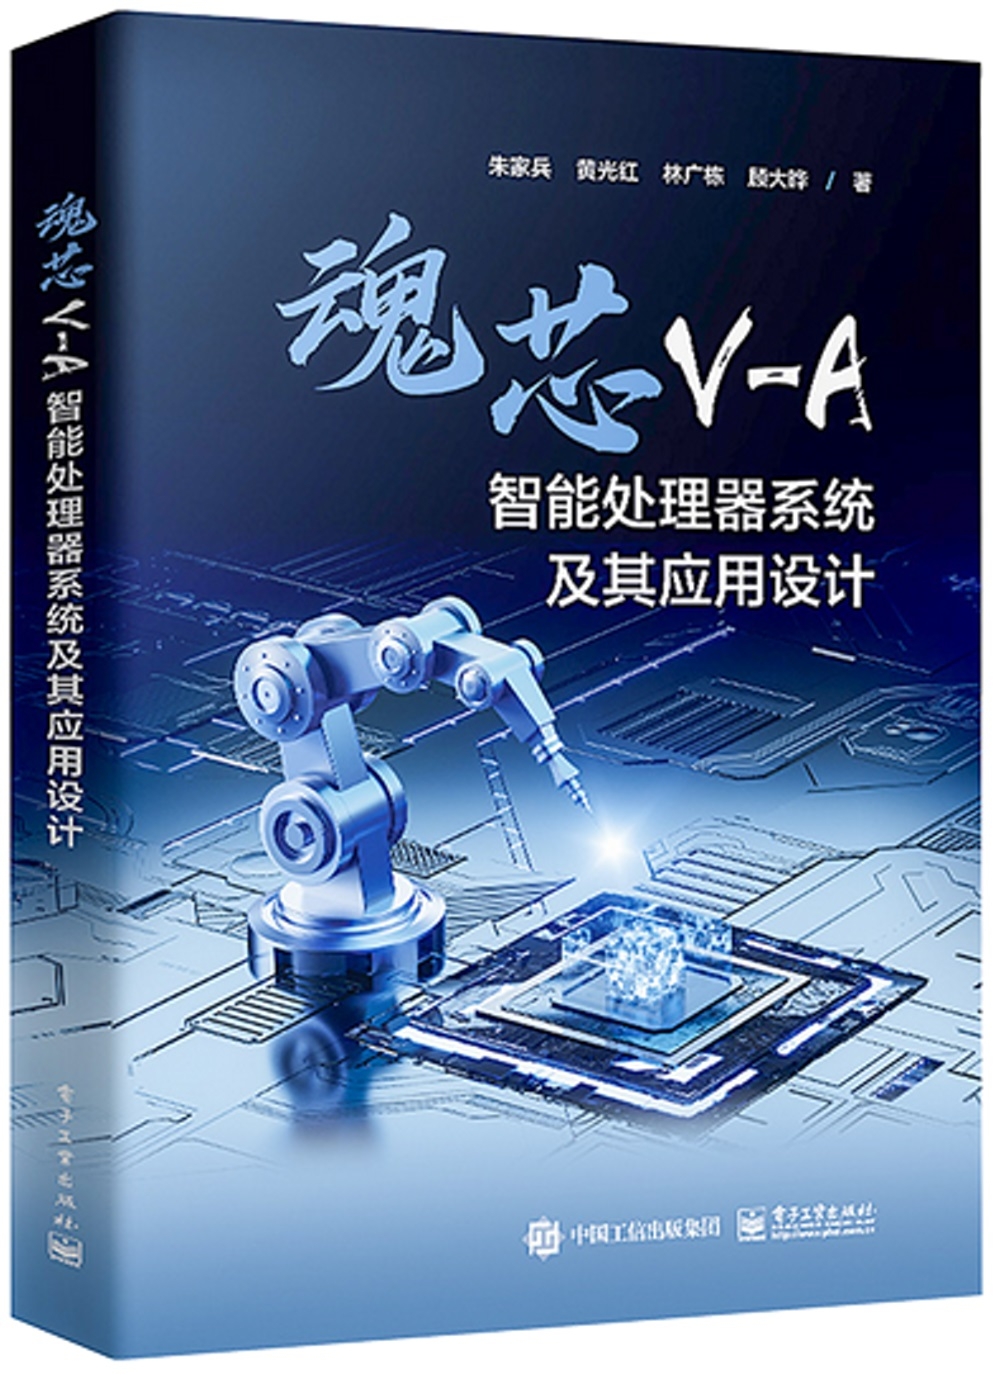 魂芯V-A智能處理器系統及其應用設計